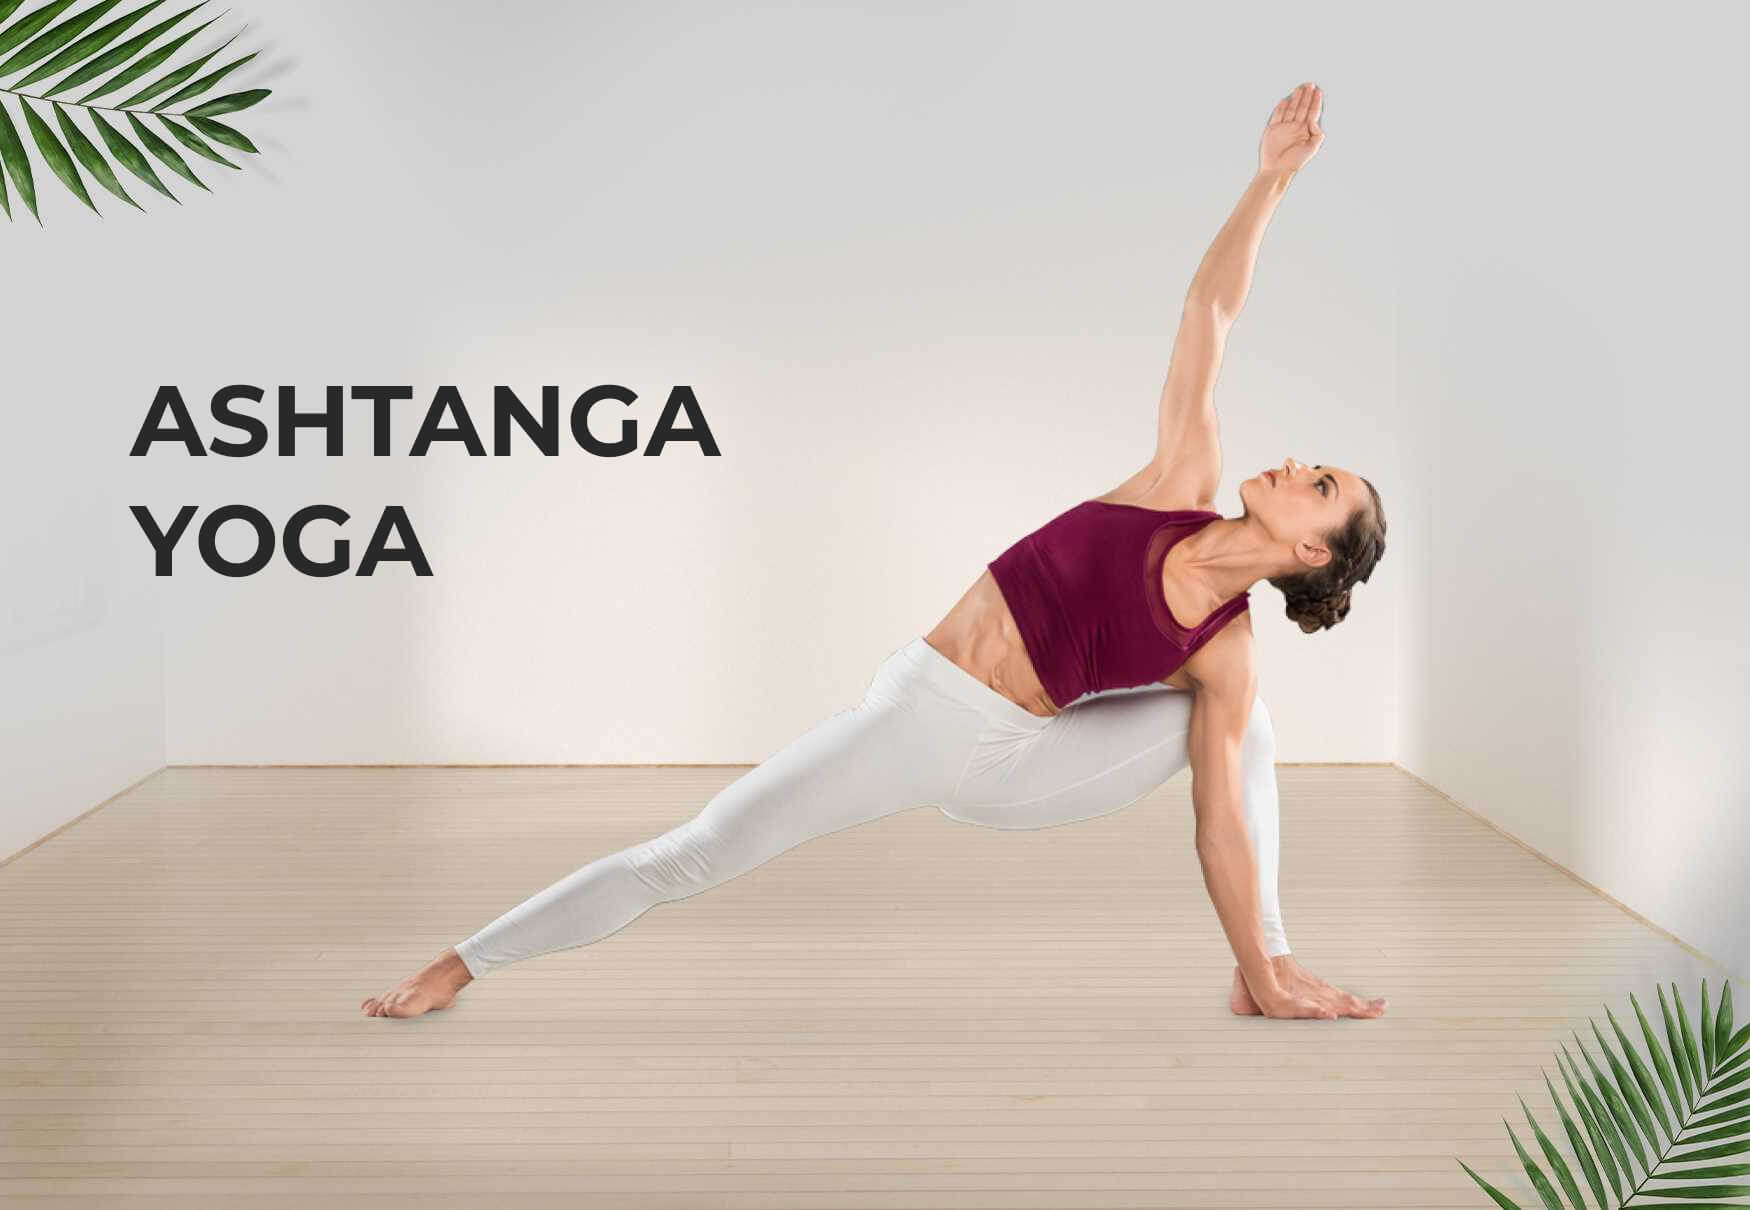 Tìm hiểu về Yoga Ashtanga là gì và những điểm khác biệt so với yoga truyền thống.